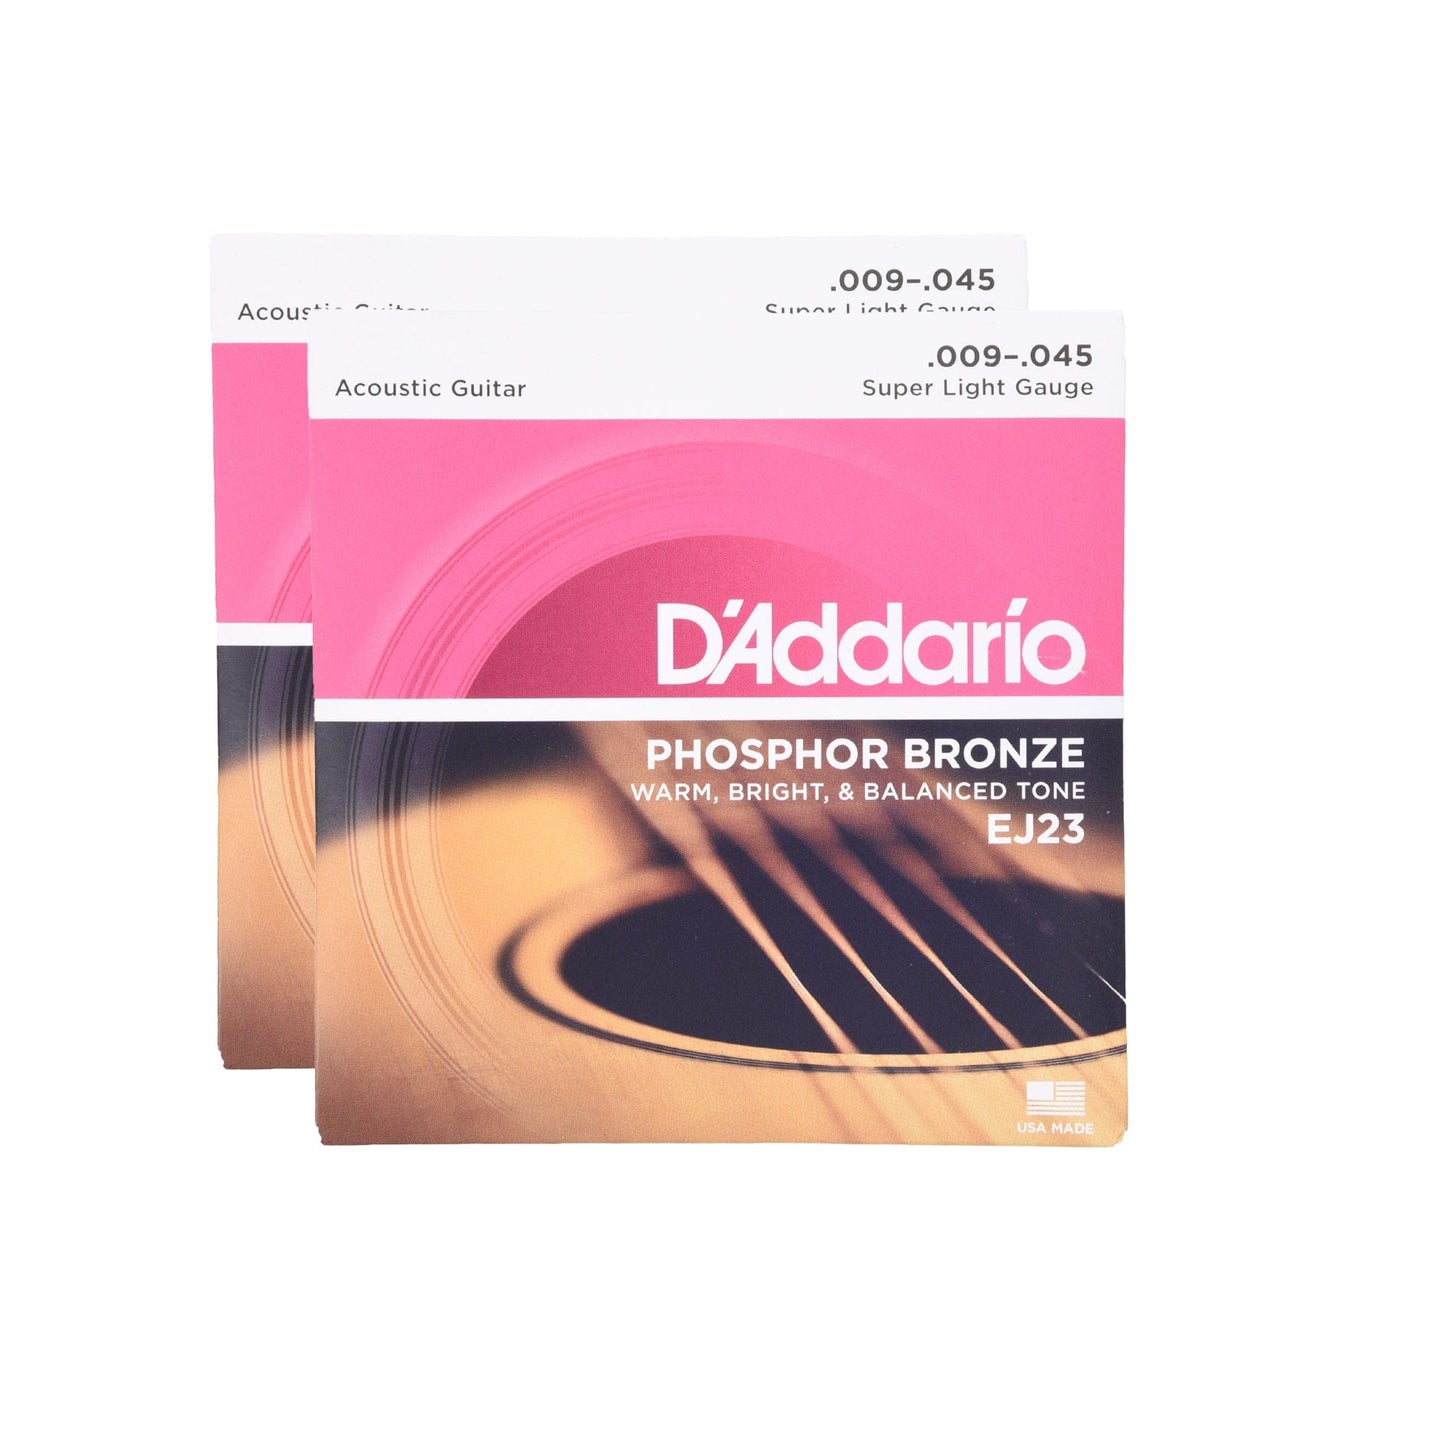 D'Addario EJ23 Phosphor Bronze Acoustic Guitar Strings 9-45 Super Light 2-Pack Bundle Accessories / Strings / Guitar Strings